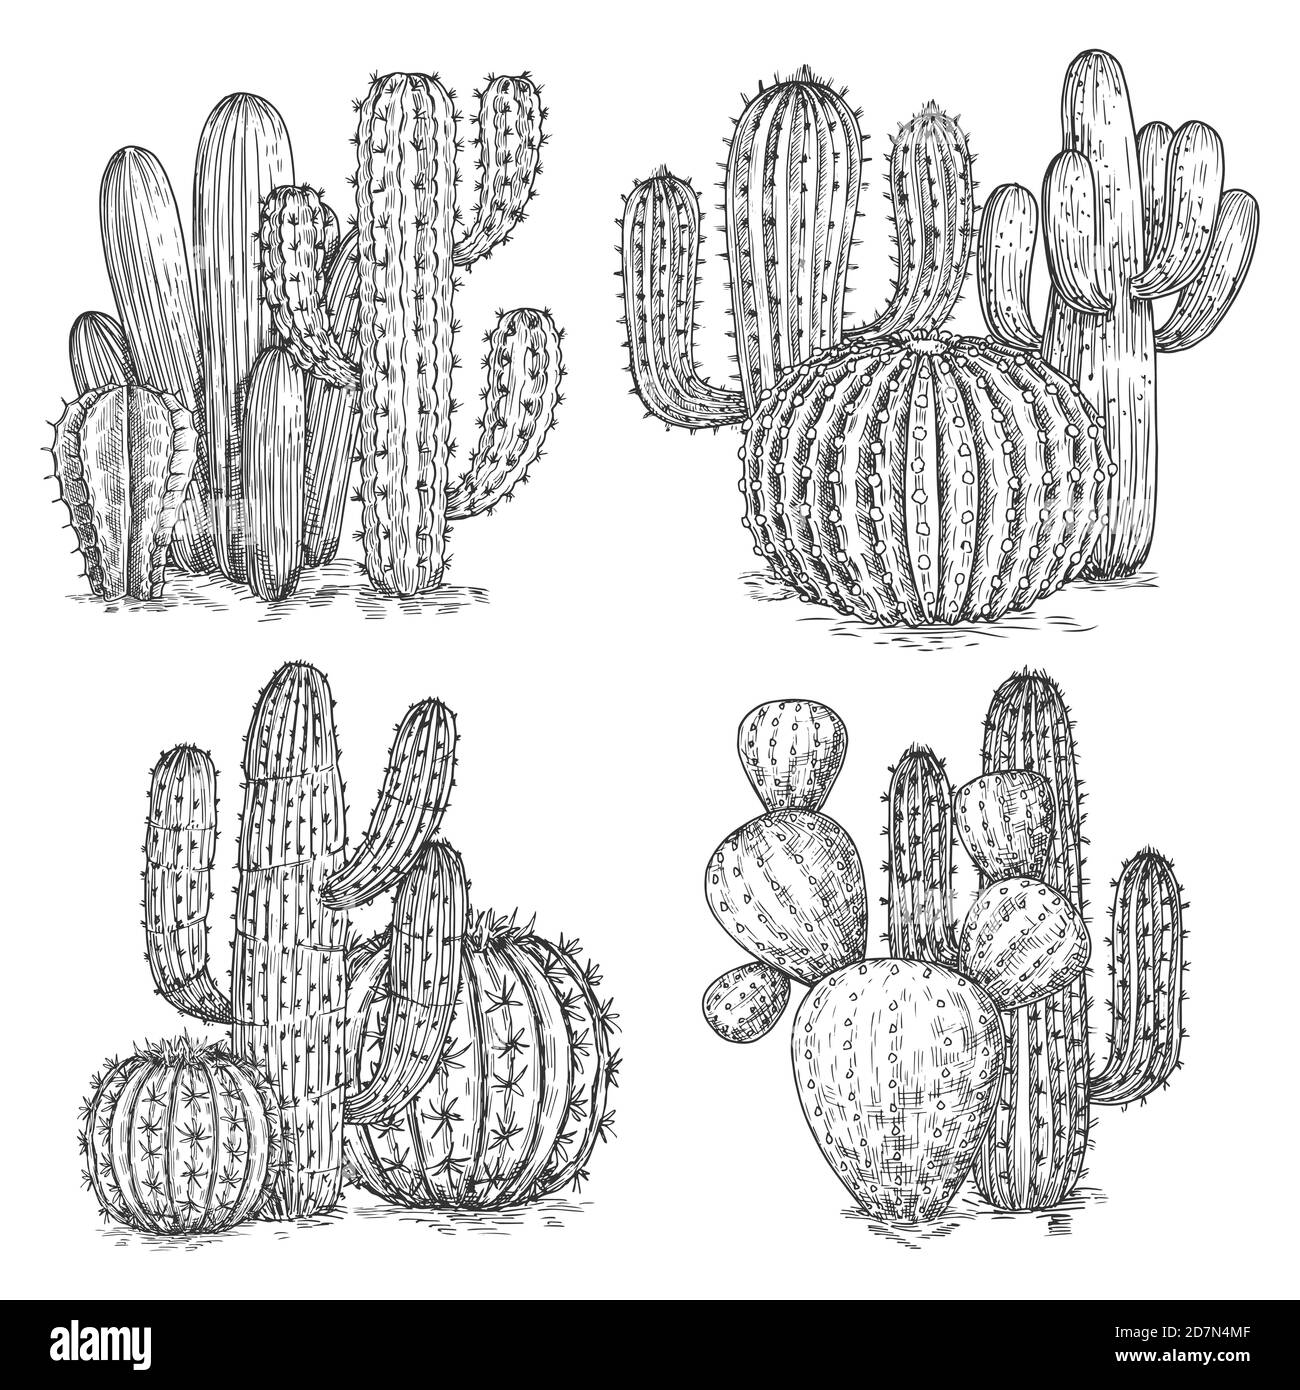 Illustration vectorielle de cactus esquissée à la main. Compositions de fleurs désertiques isolées sur fond blanc. Illustration de cactus mexicains, usine de croquis Illustration de Vecteur